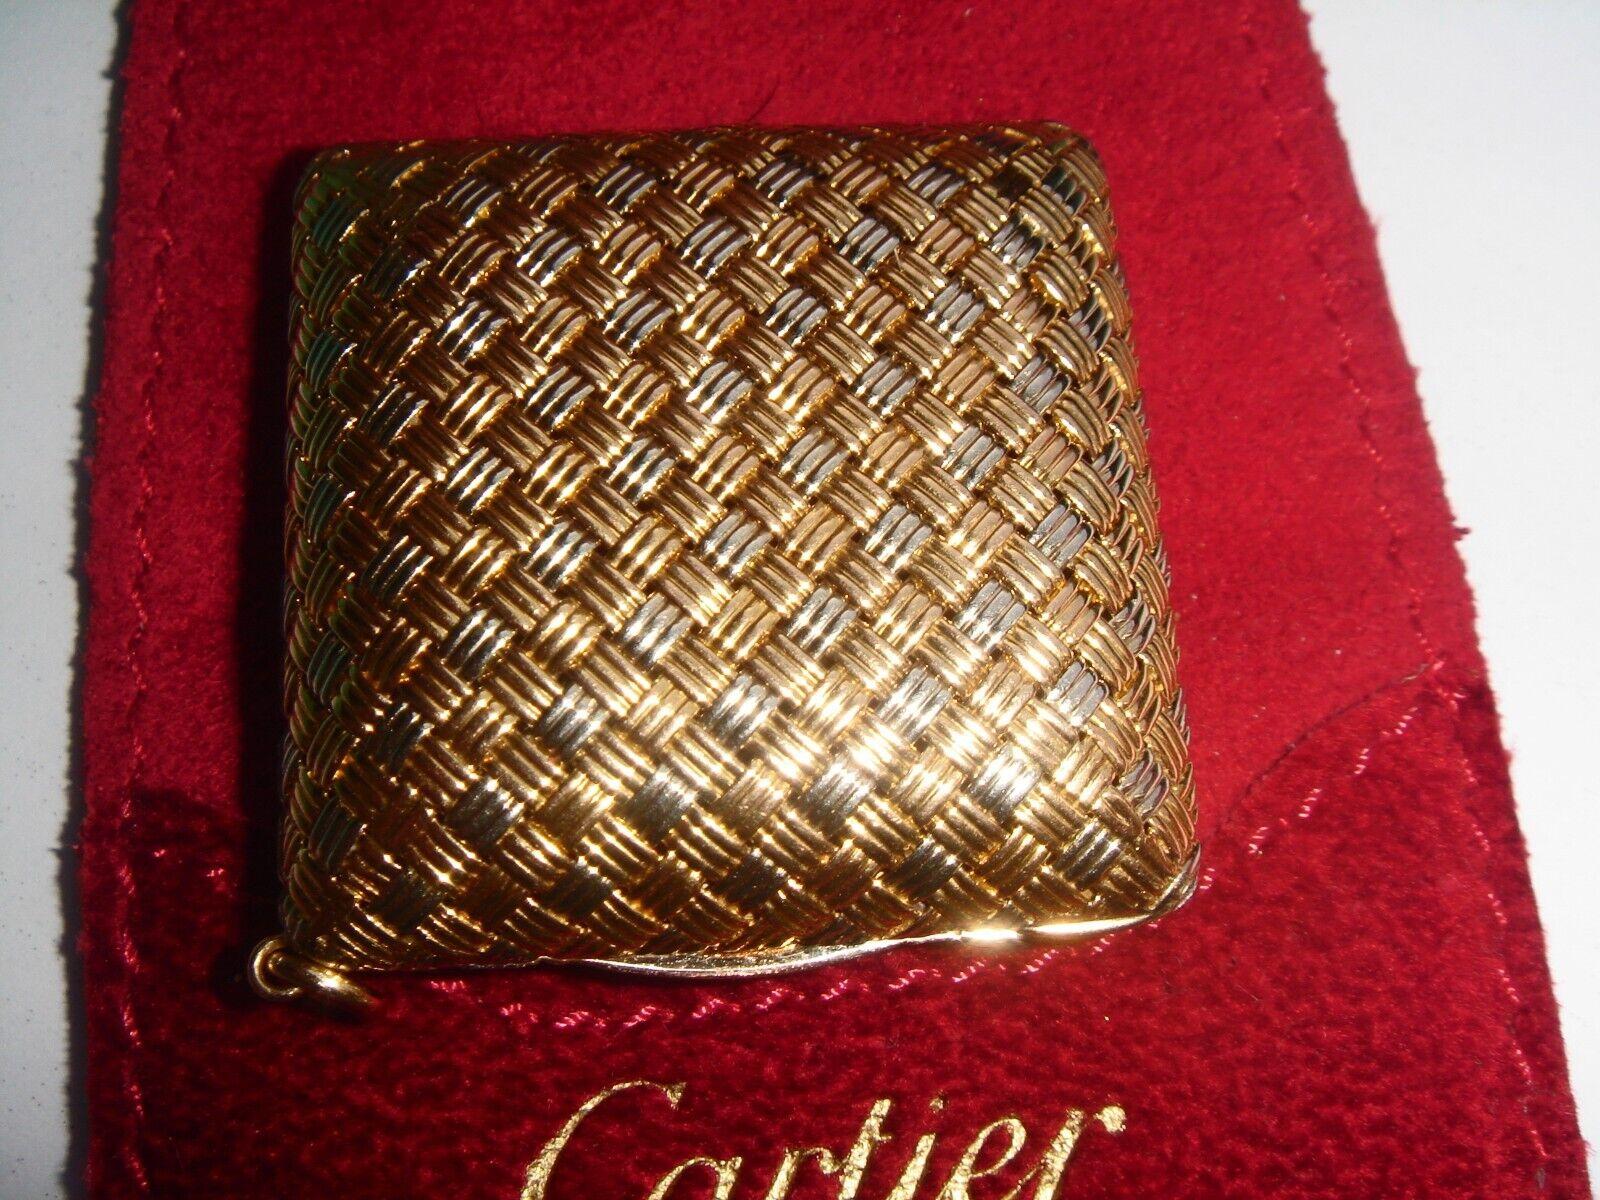 Cartier Paris 18k Zwei-Ton-Gold Pillendose Anhänger Retro CIRCA 1950er Jahre


Hier haben Sie die Chance, einen wunderschönen und sehr begehrten Designer-Pillenbox-Anhänger zu erwerben.  Wirklich ein tolles Stück zu einem tollen Preis!